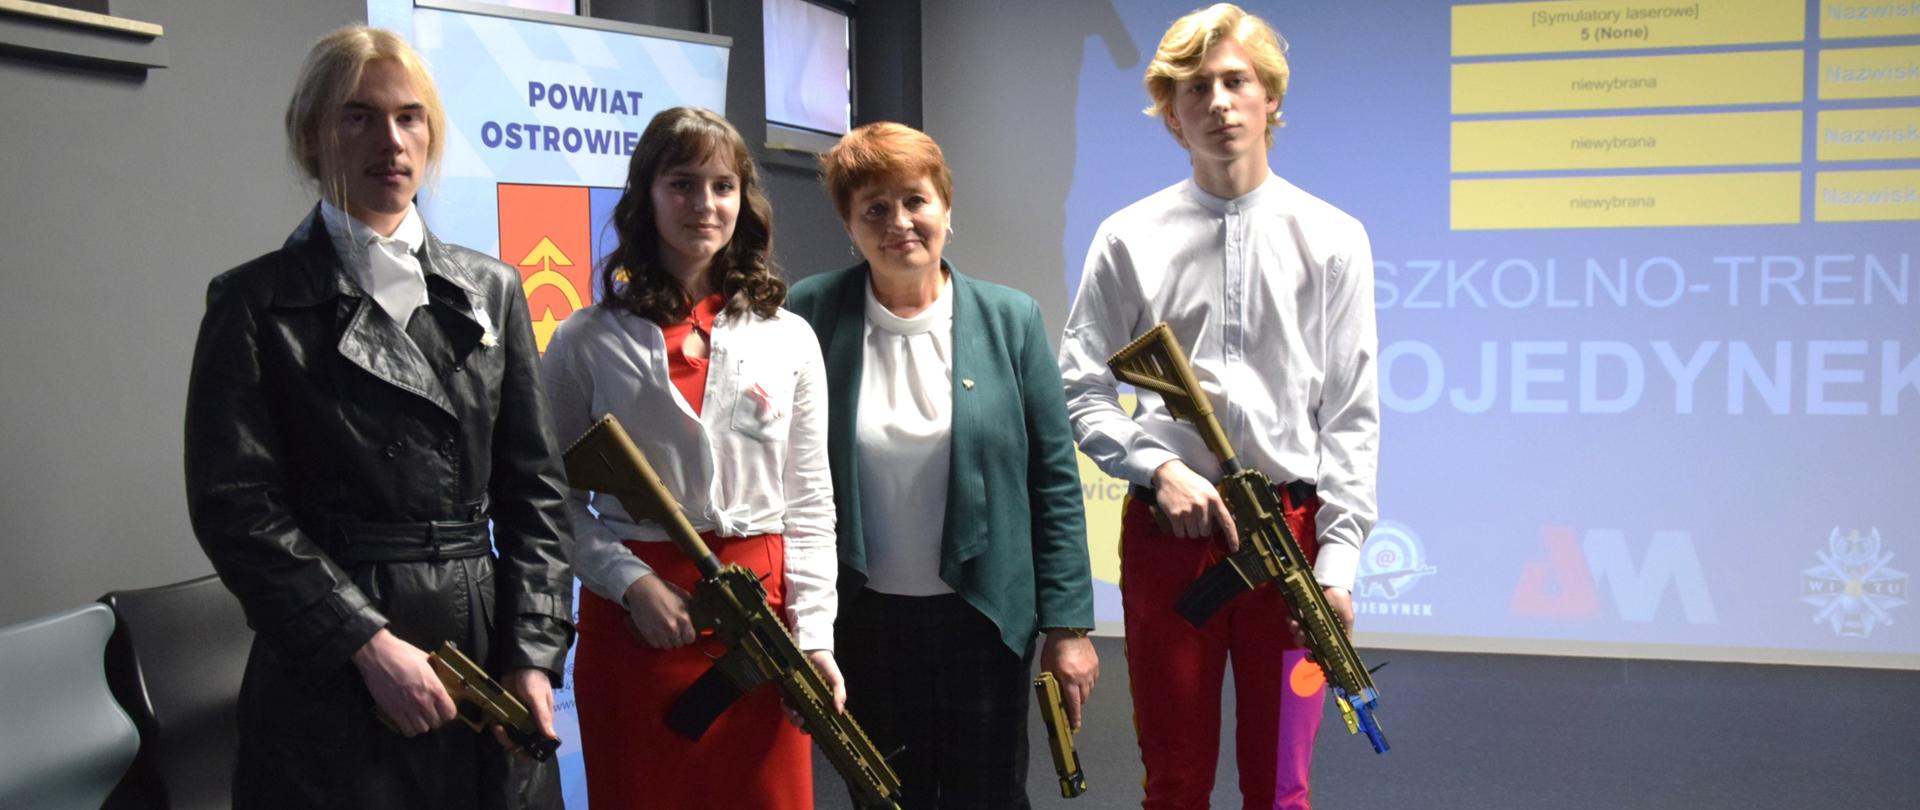 Wirtualna strzelnica w Chreptowiczu służy młodzieży